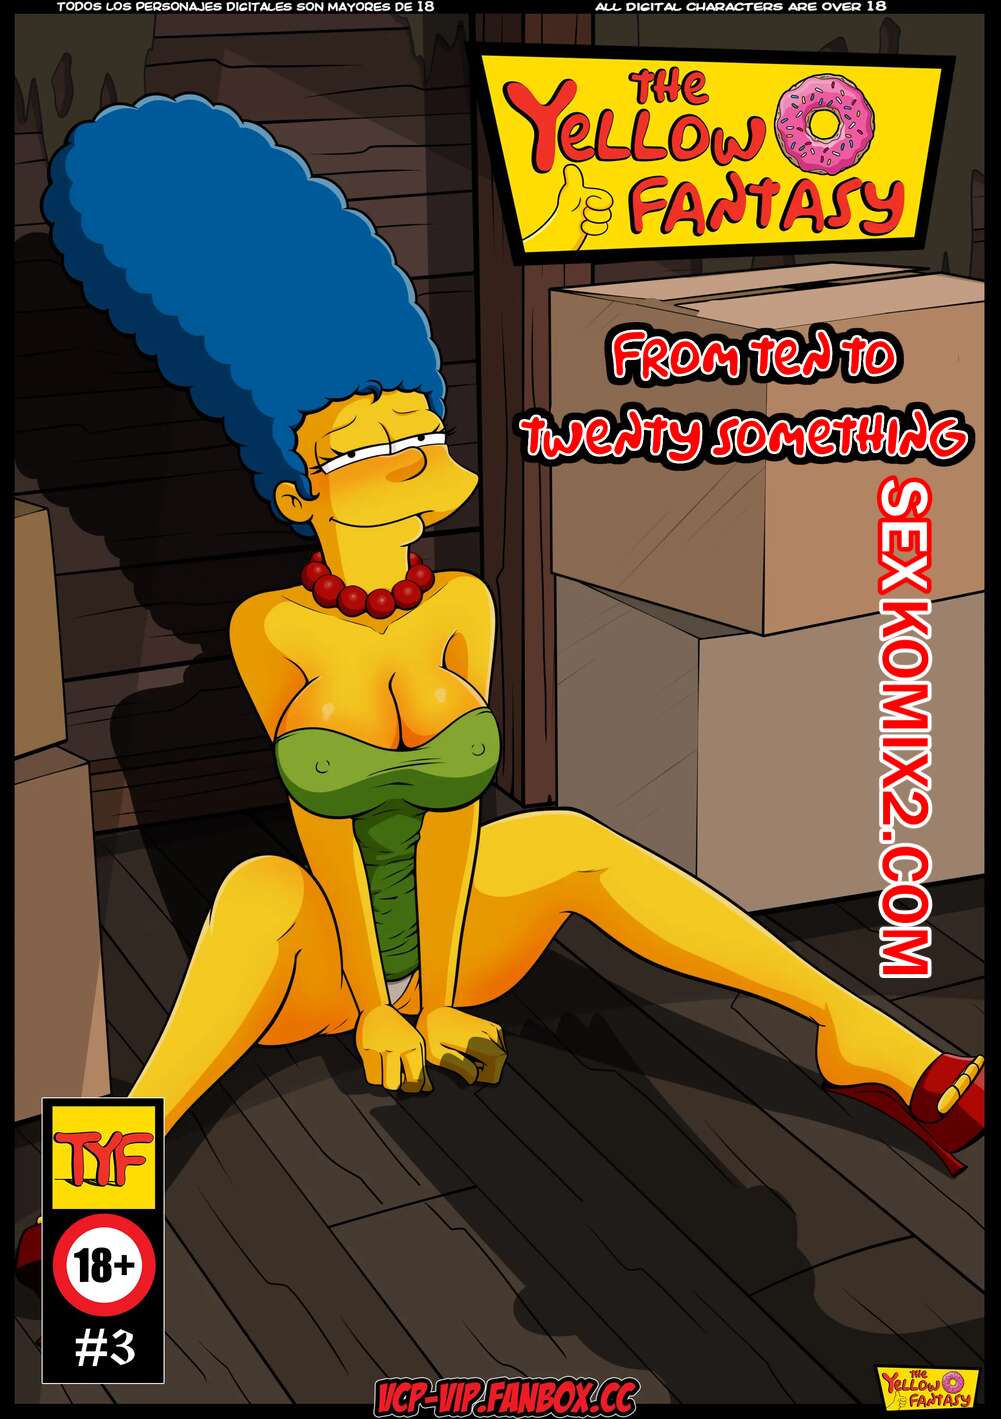 Порно Фильм Онлайн - Симпсоны: XXX Порно Пародия / Simpsons: The XXX Parody - Смотреть Бесплатно!